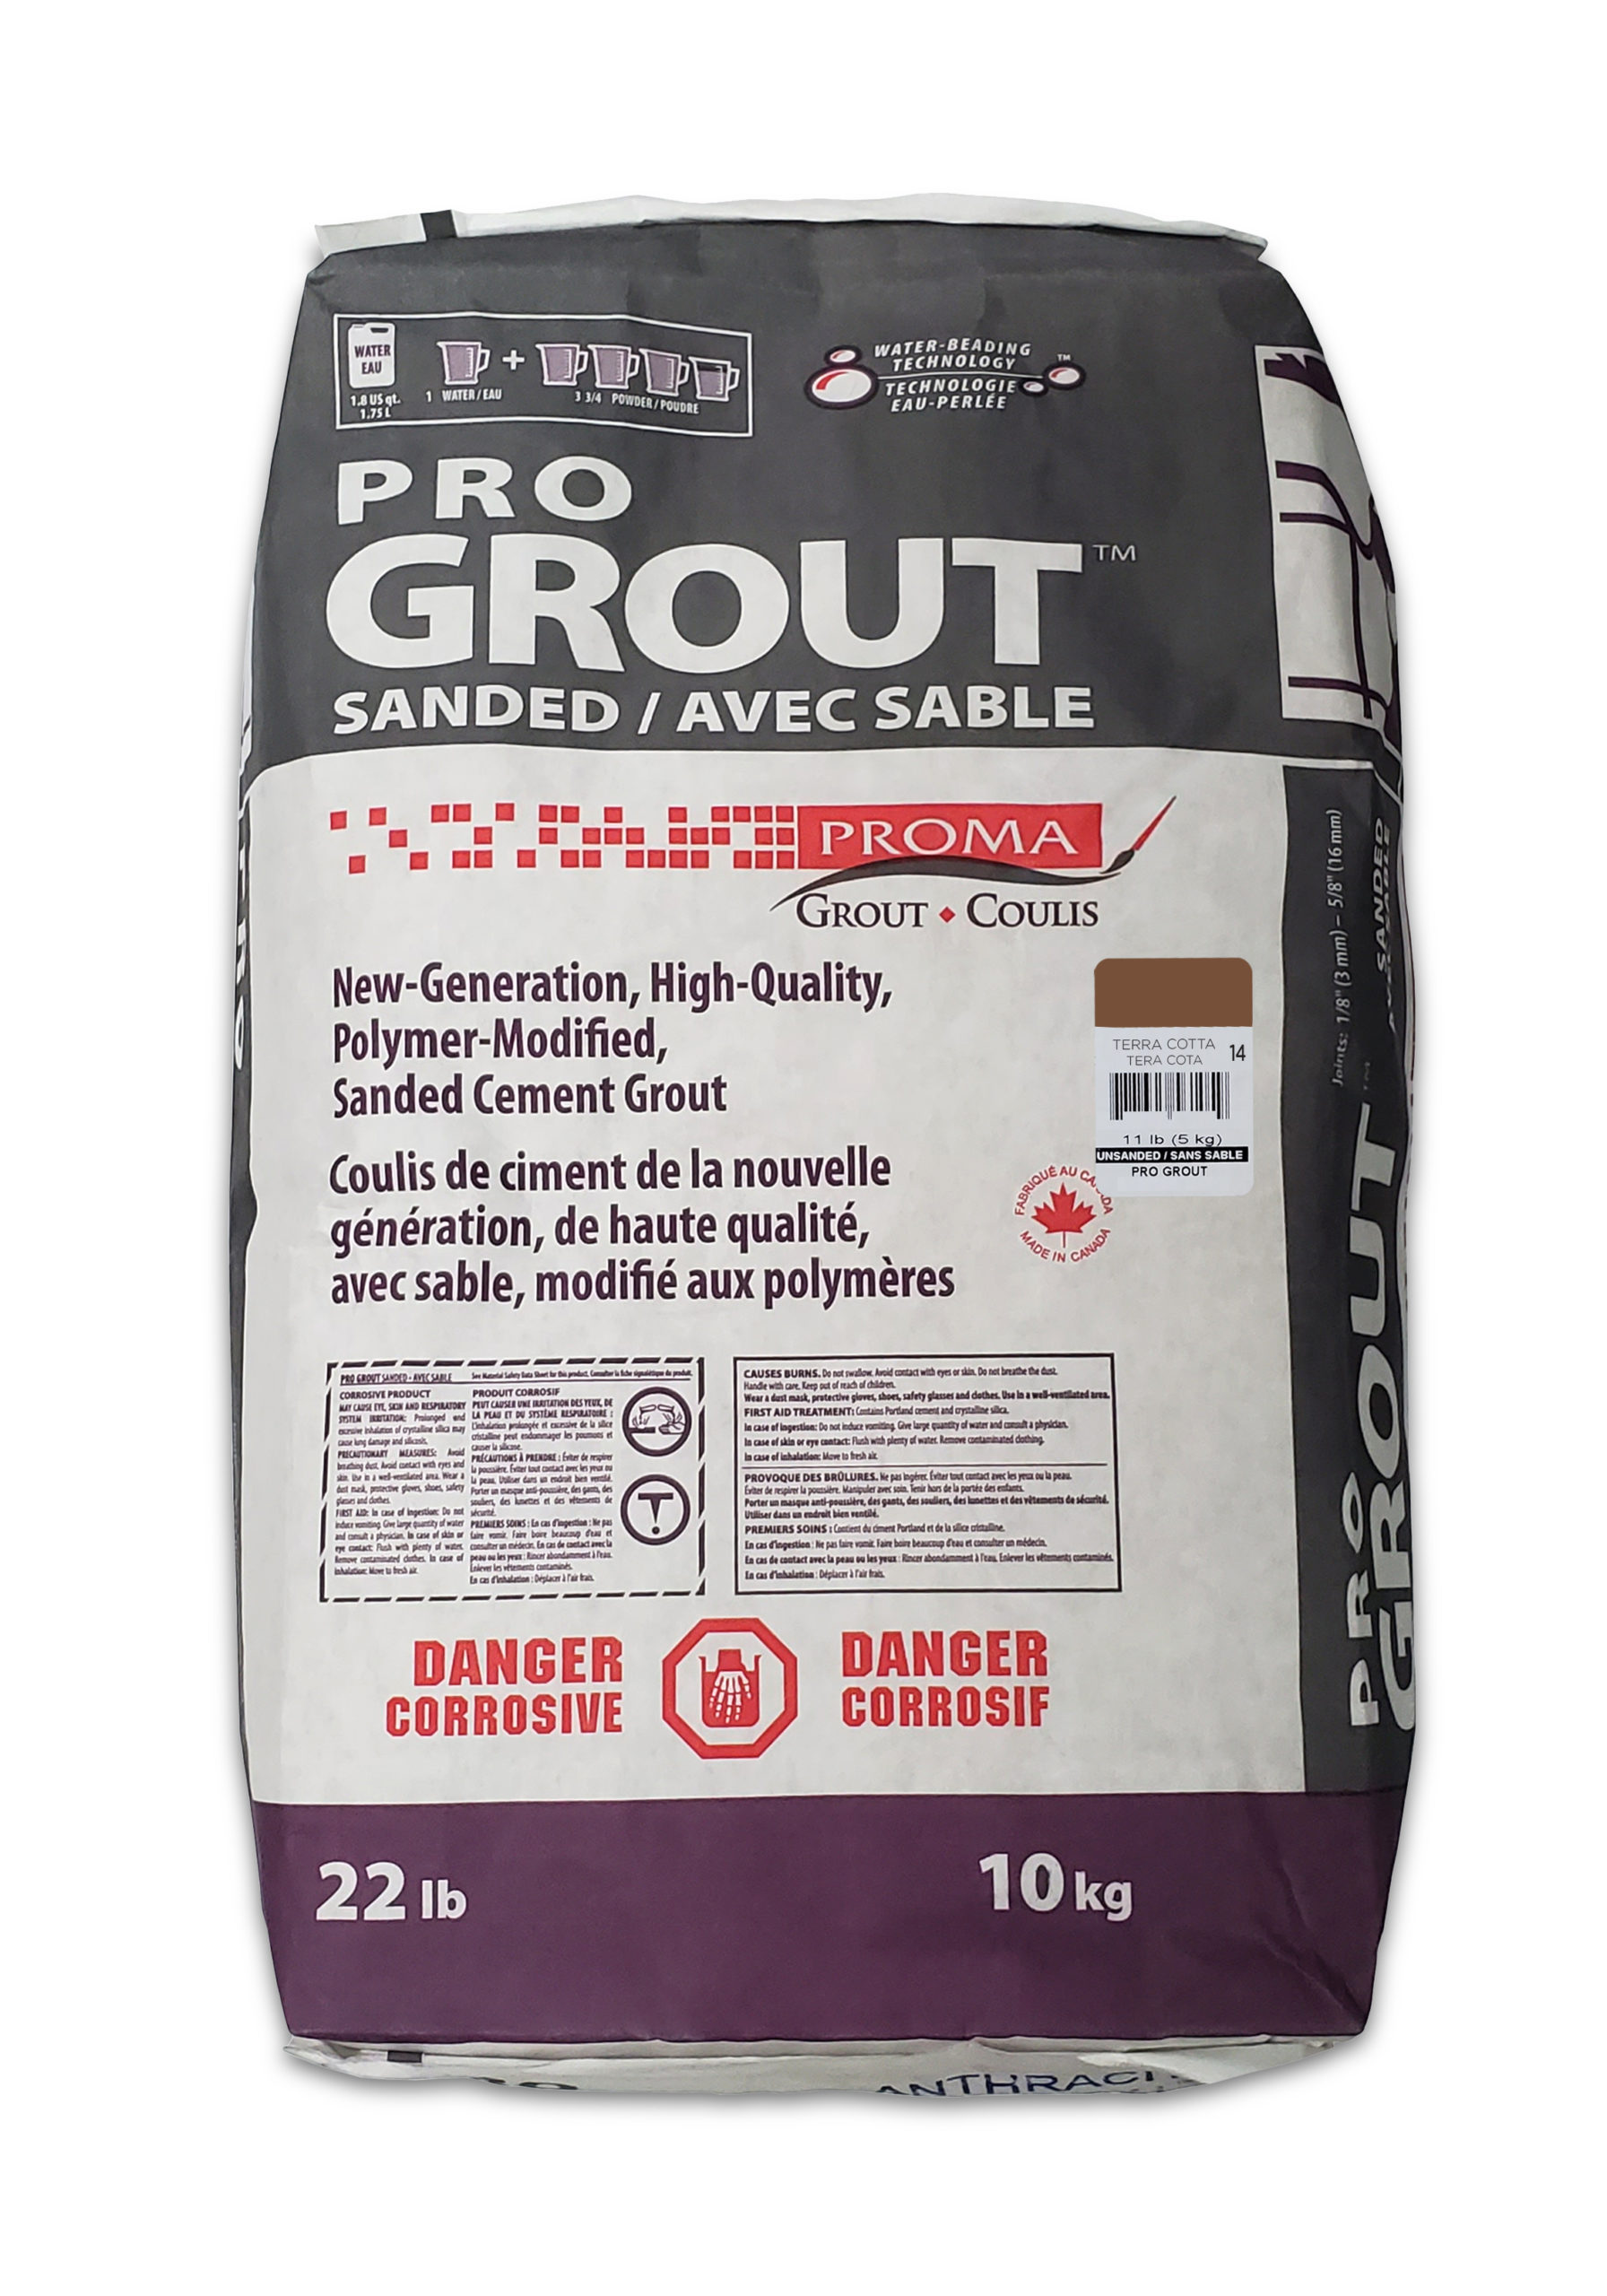 Pro Grout – Sanded_Terra Cotta_10kg_22lb